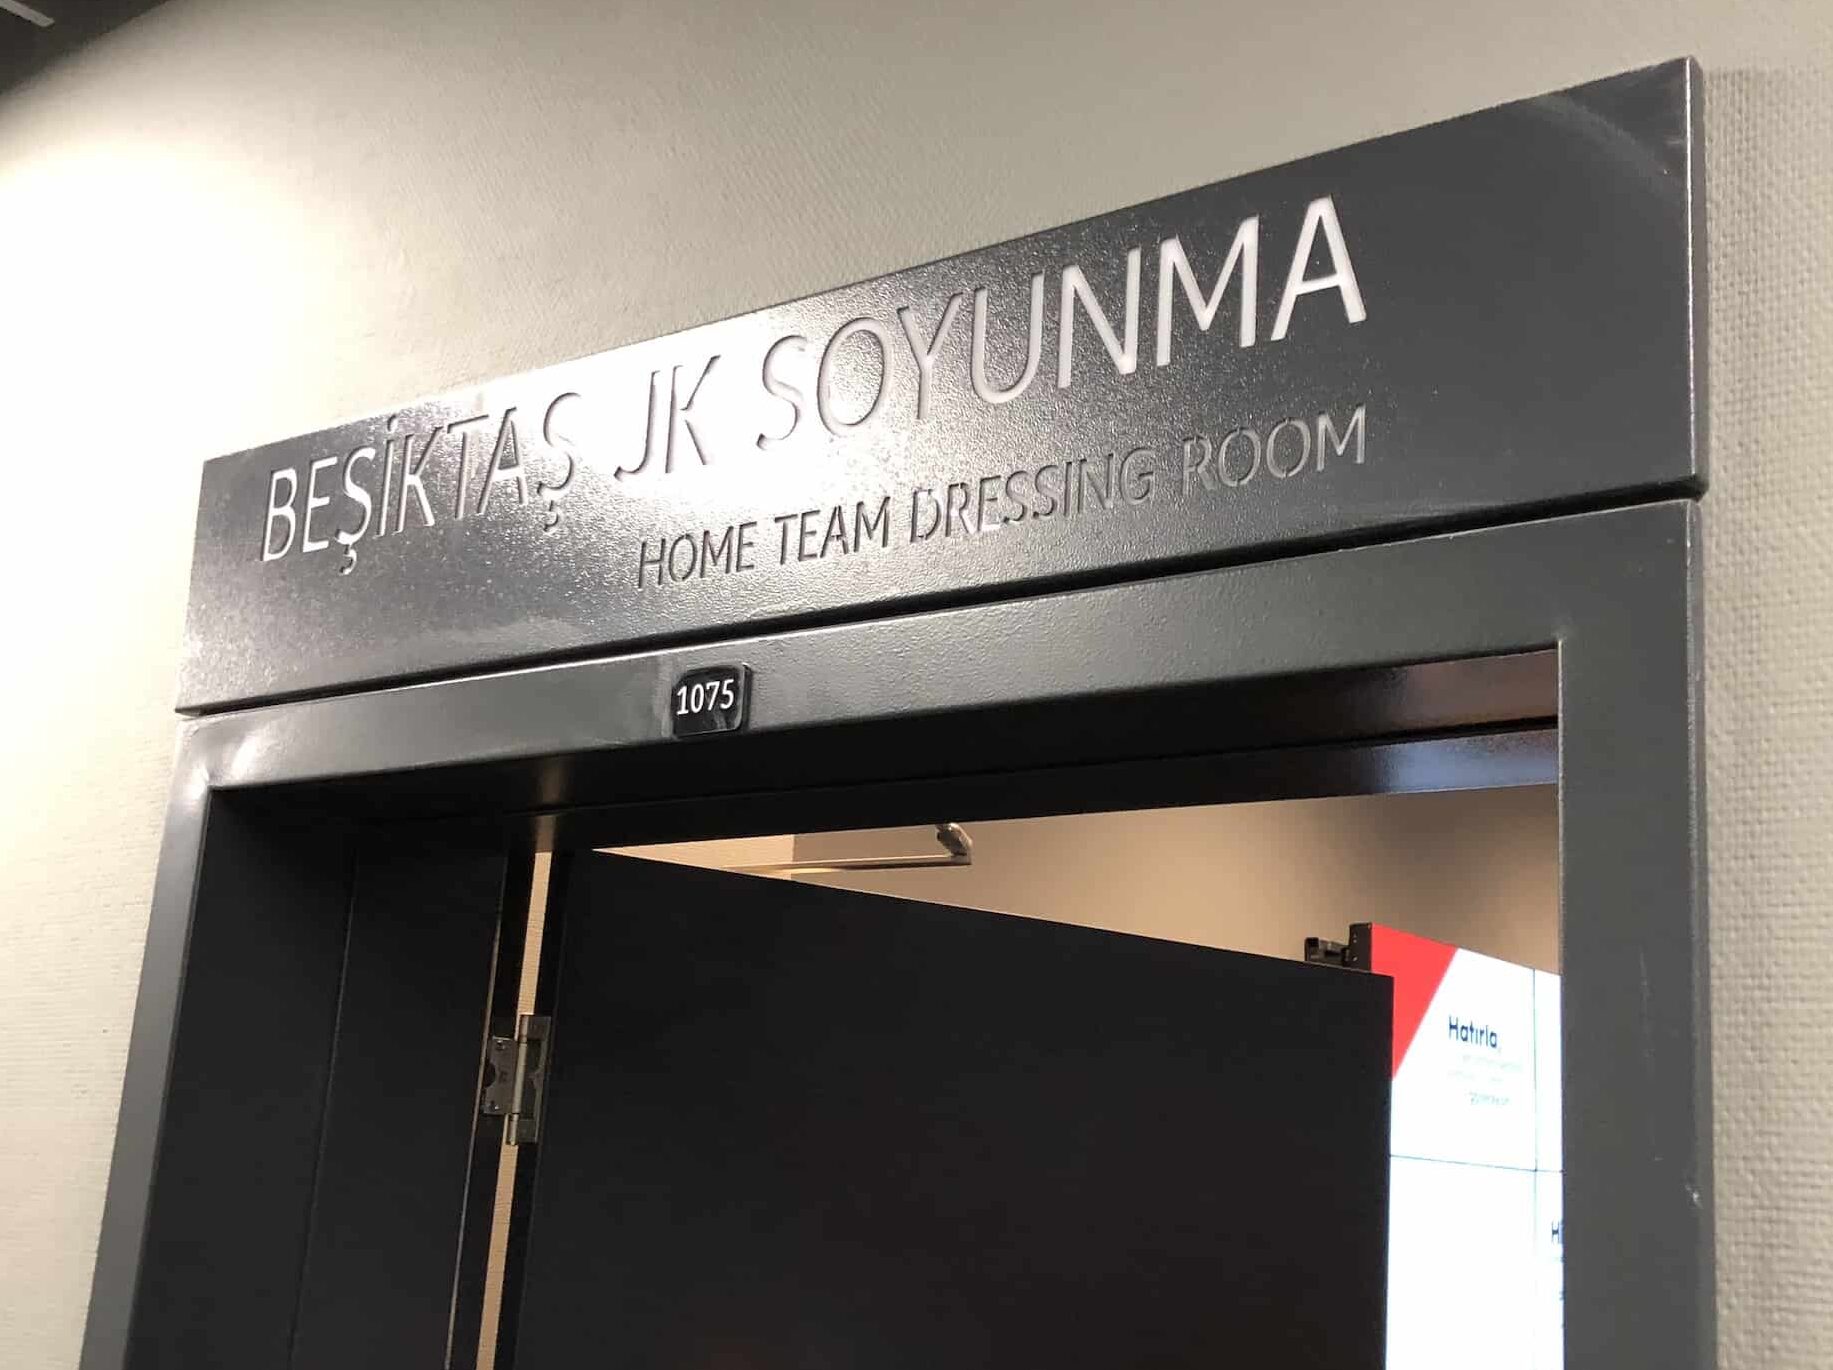 Beşiktaş dressing room entrance